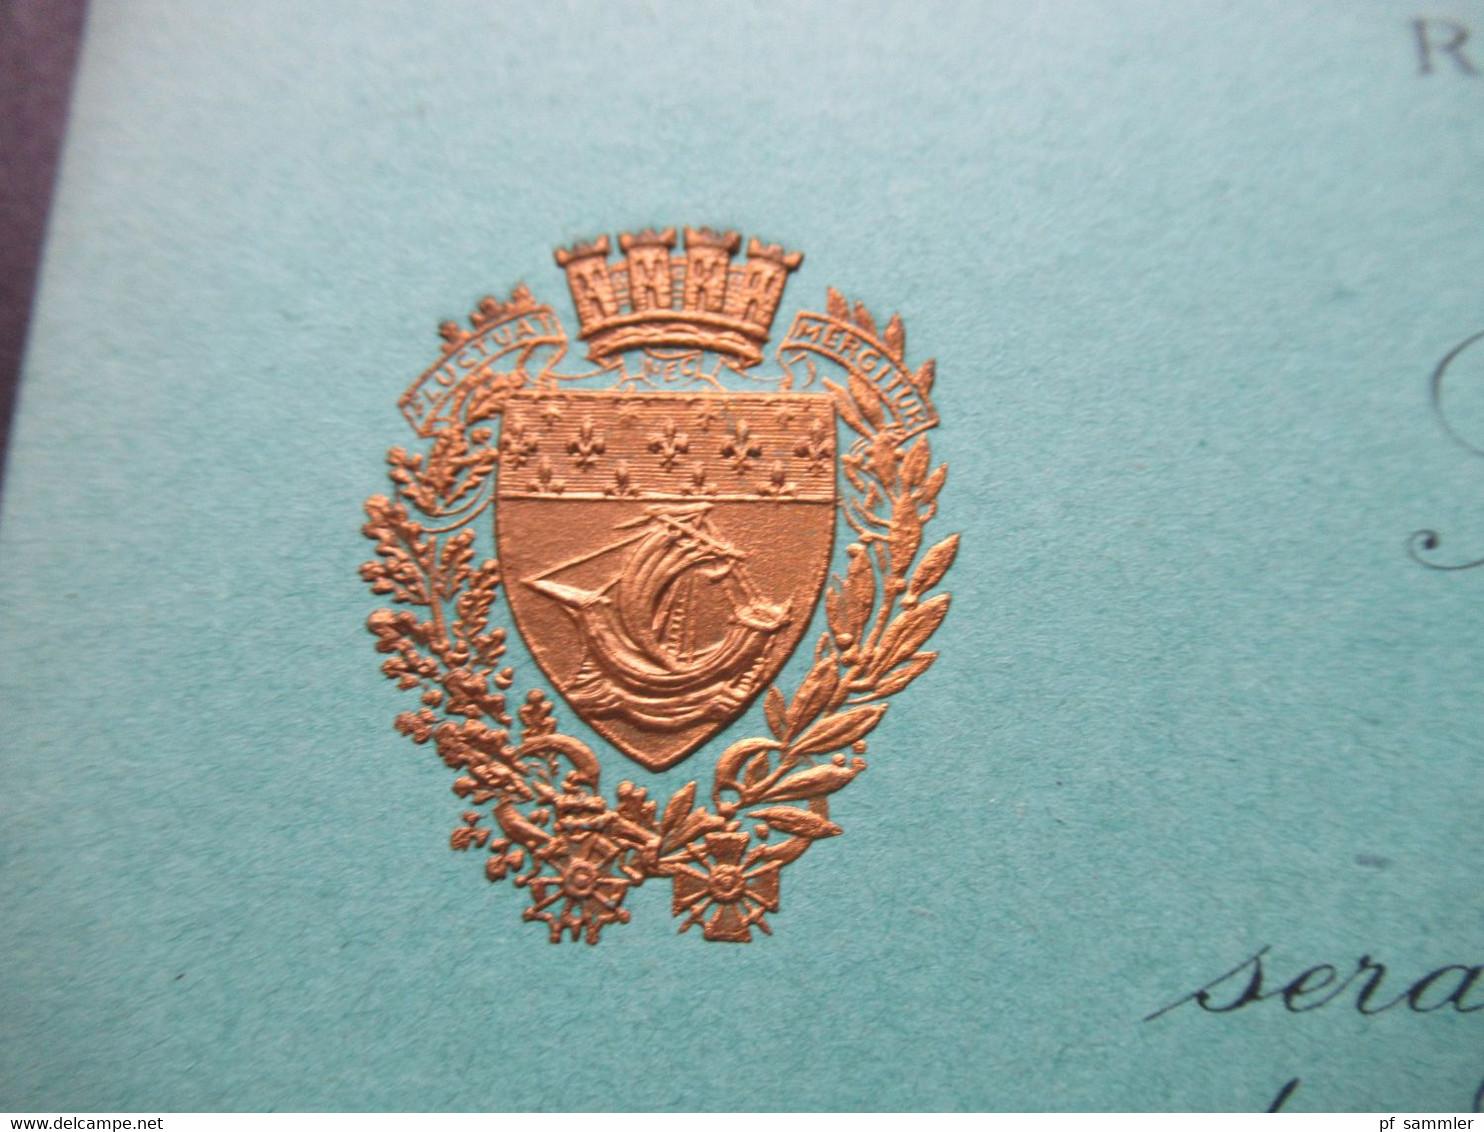 1927 Zwei Einladungskarten Zum Besuch Sa Majestre Fouad 1. Roi D'Egypte In Paris Im Hotel De Ville Salon Des Arcades - Toegangskaarten